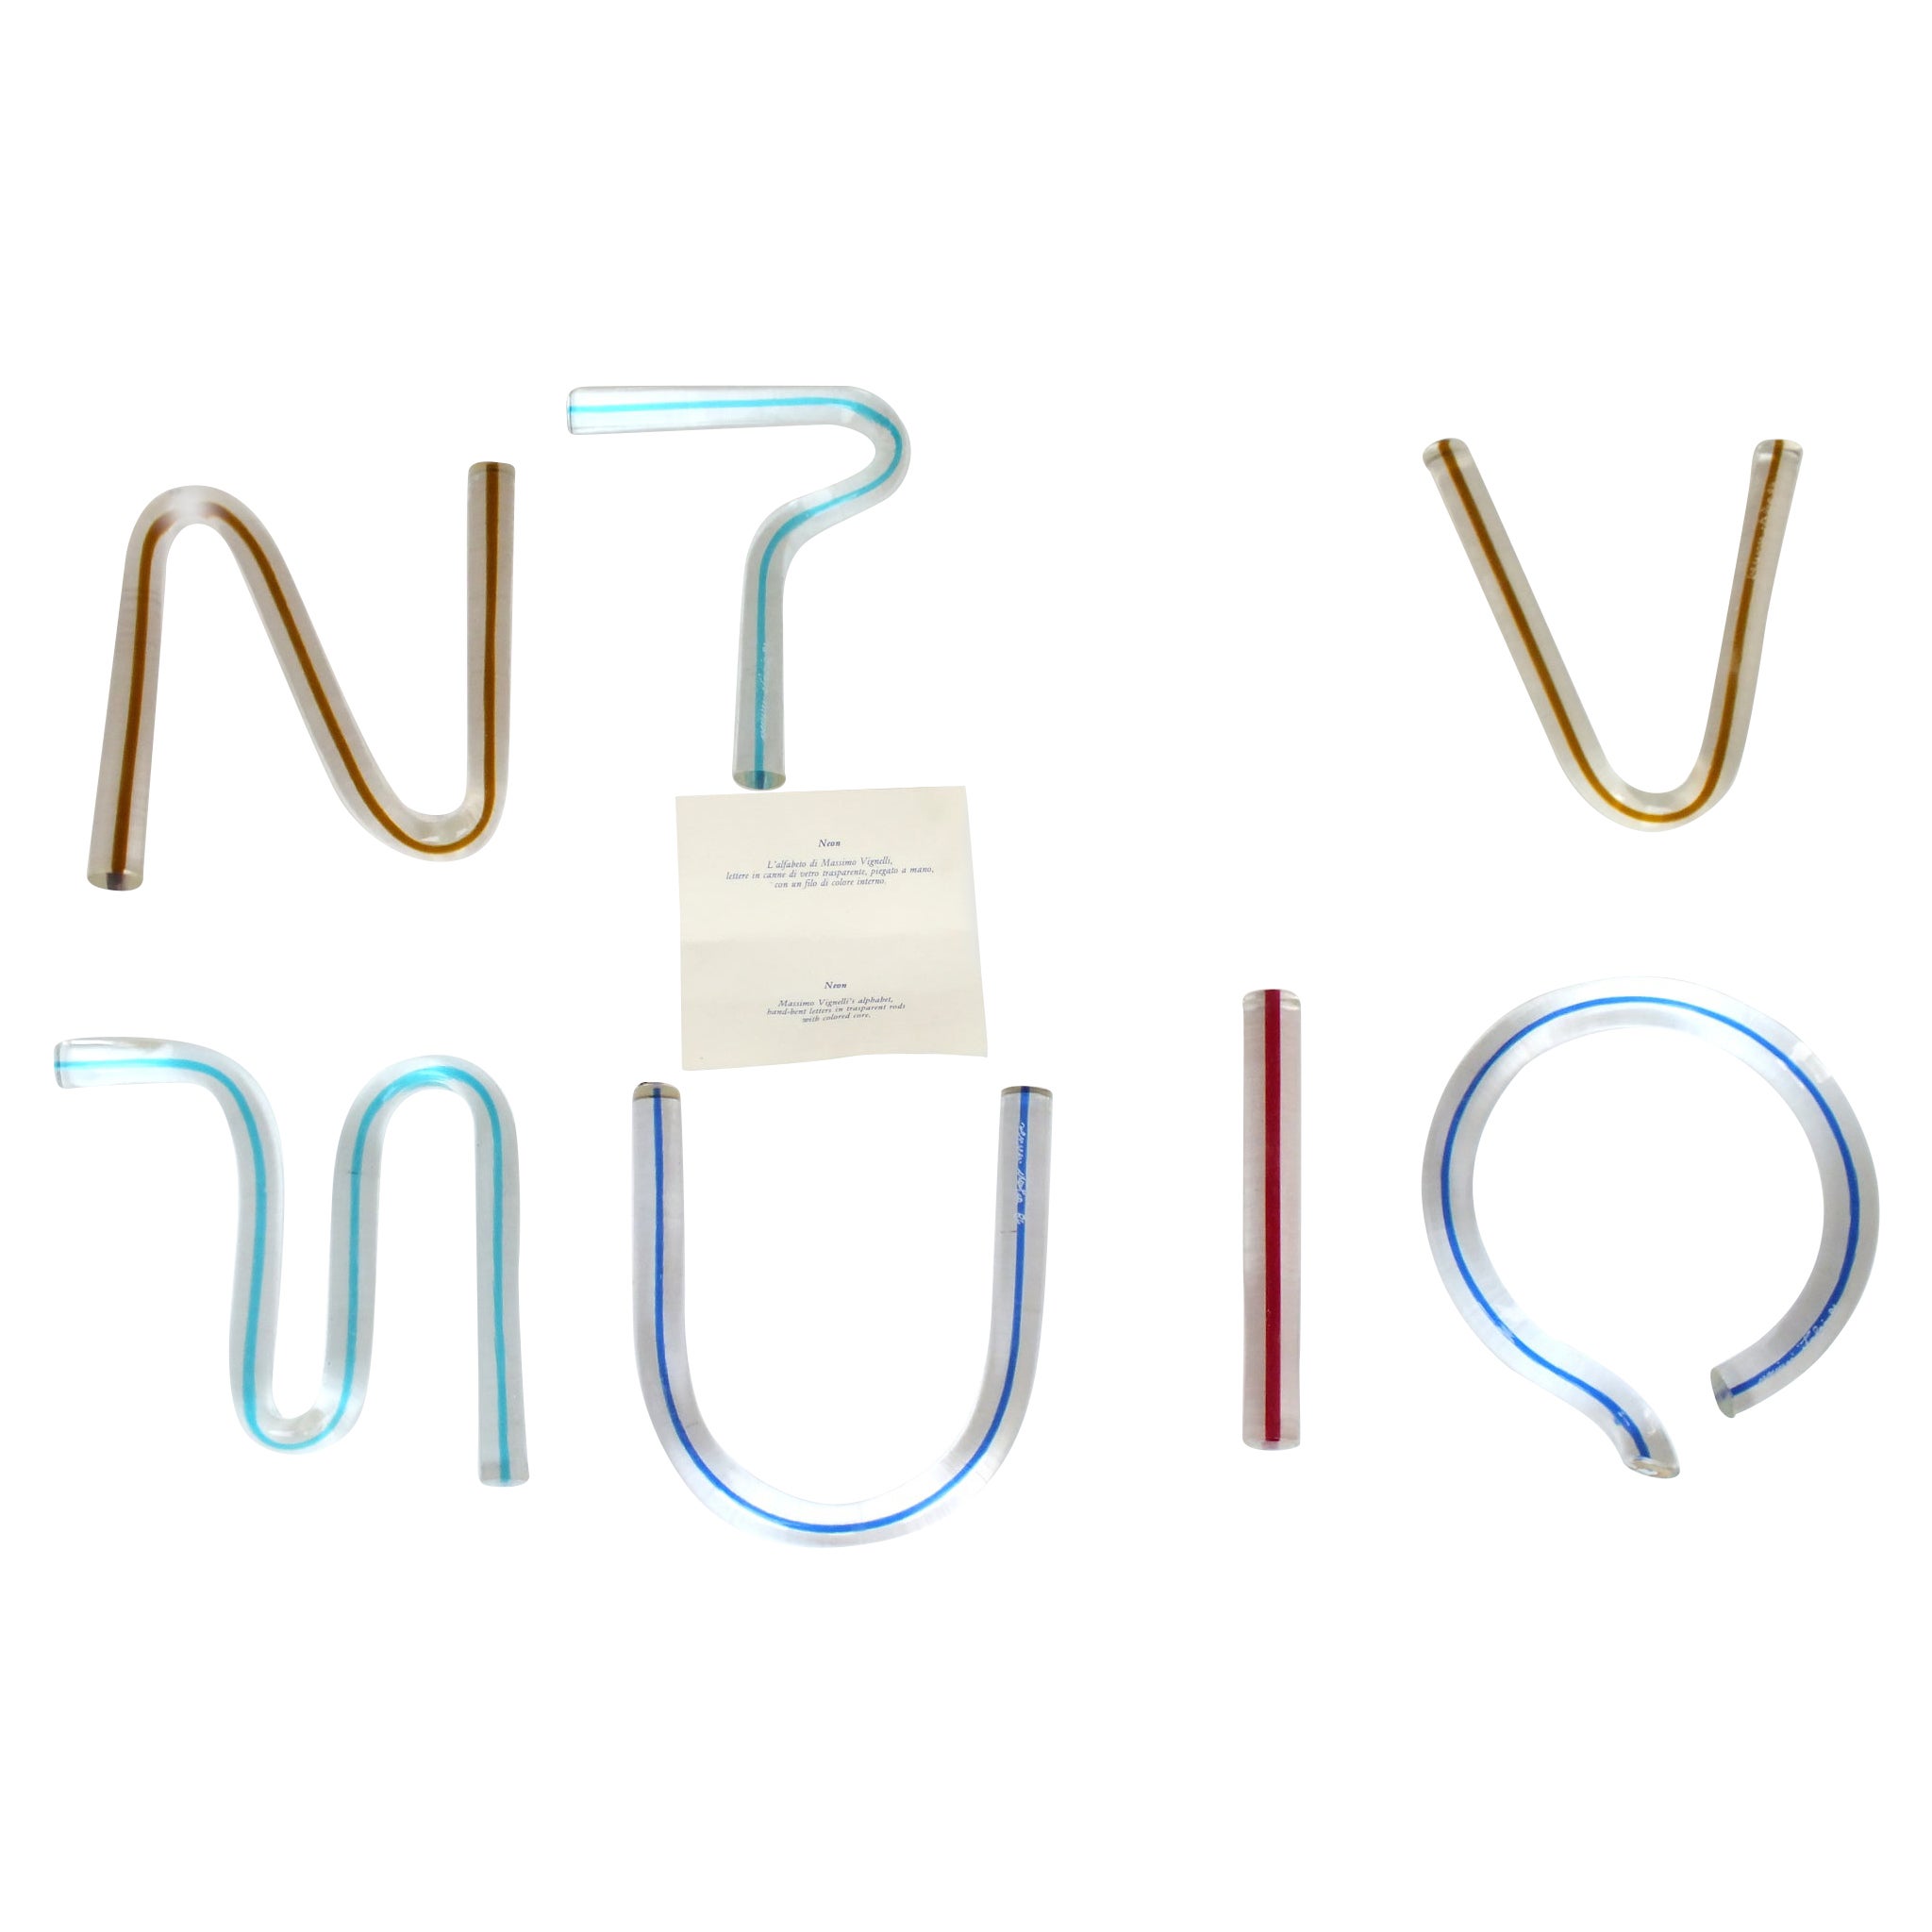 One Venini Alphabet Letters "Neon" Massimo Vignelli Design Years 1984